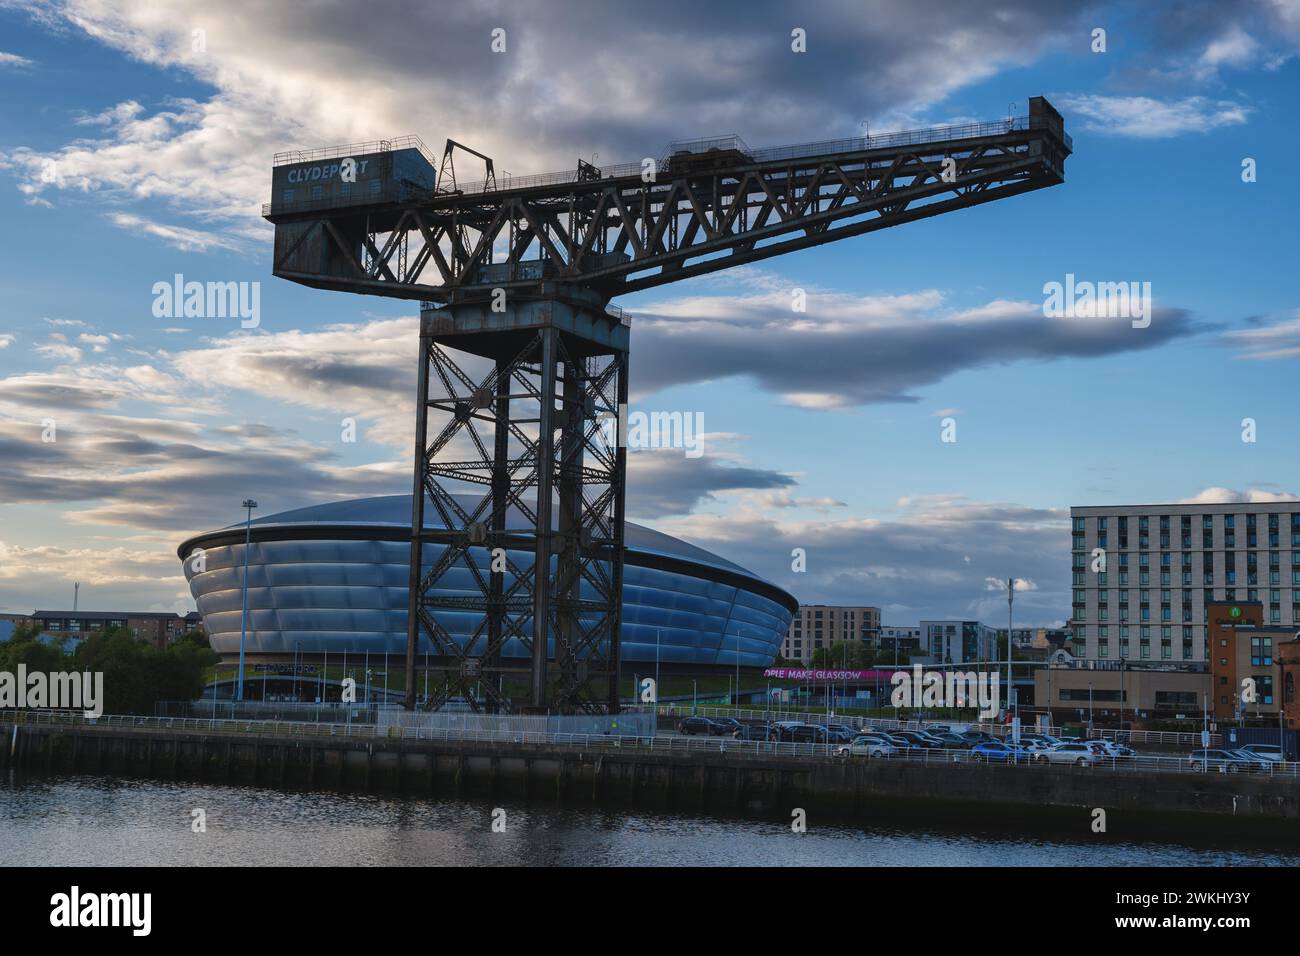 Finnieston Crane et OVO Hydro arène intérieure au crépuscule dans la ville de Glasgow, Écosse, Royaume-Uni. Banque D'Images